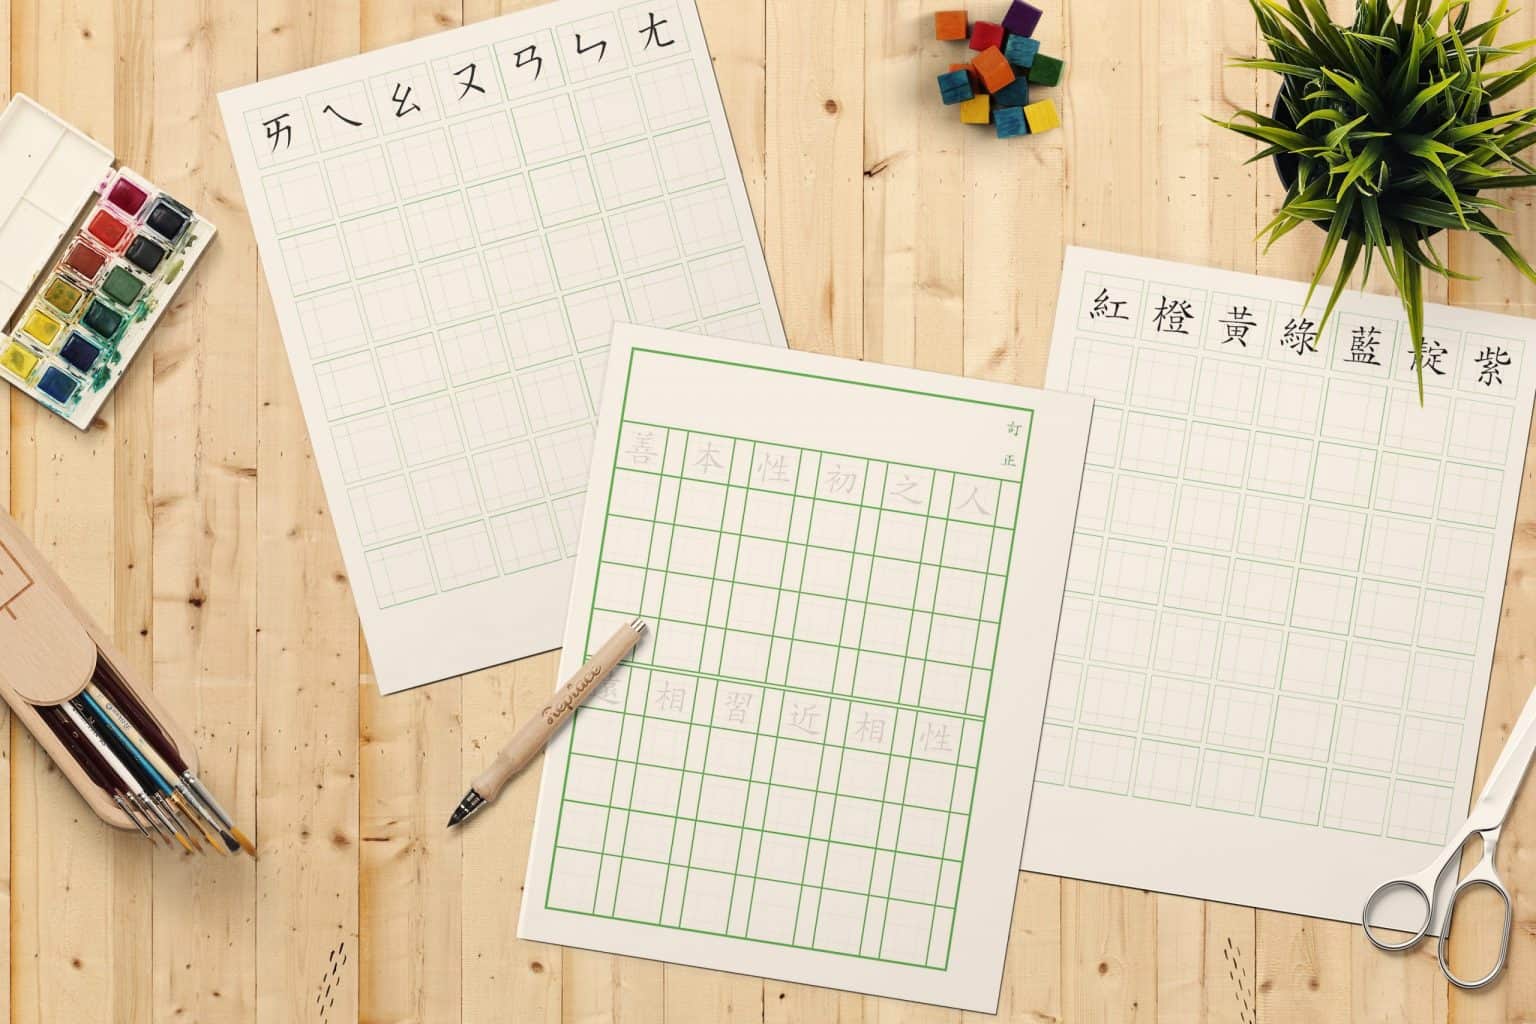 中文字練習格免費線上列印